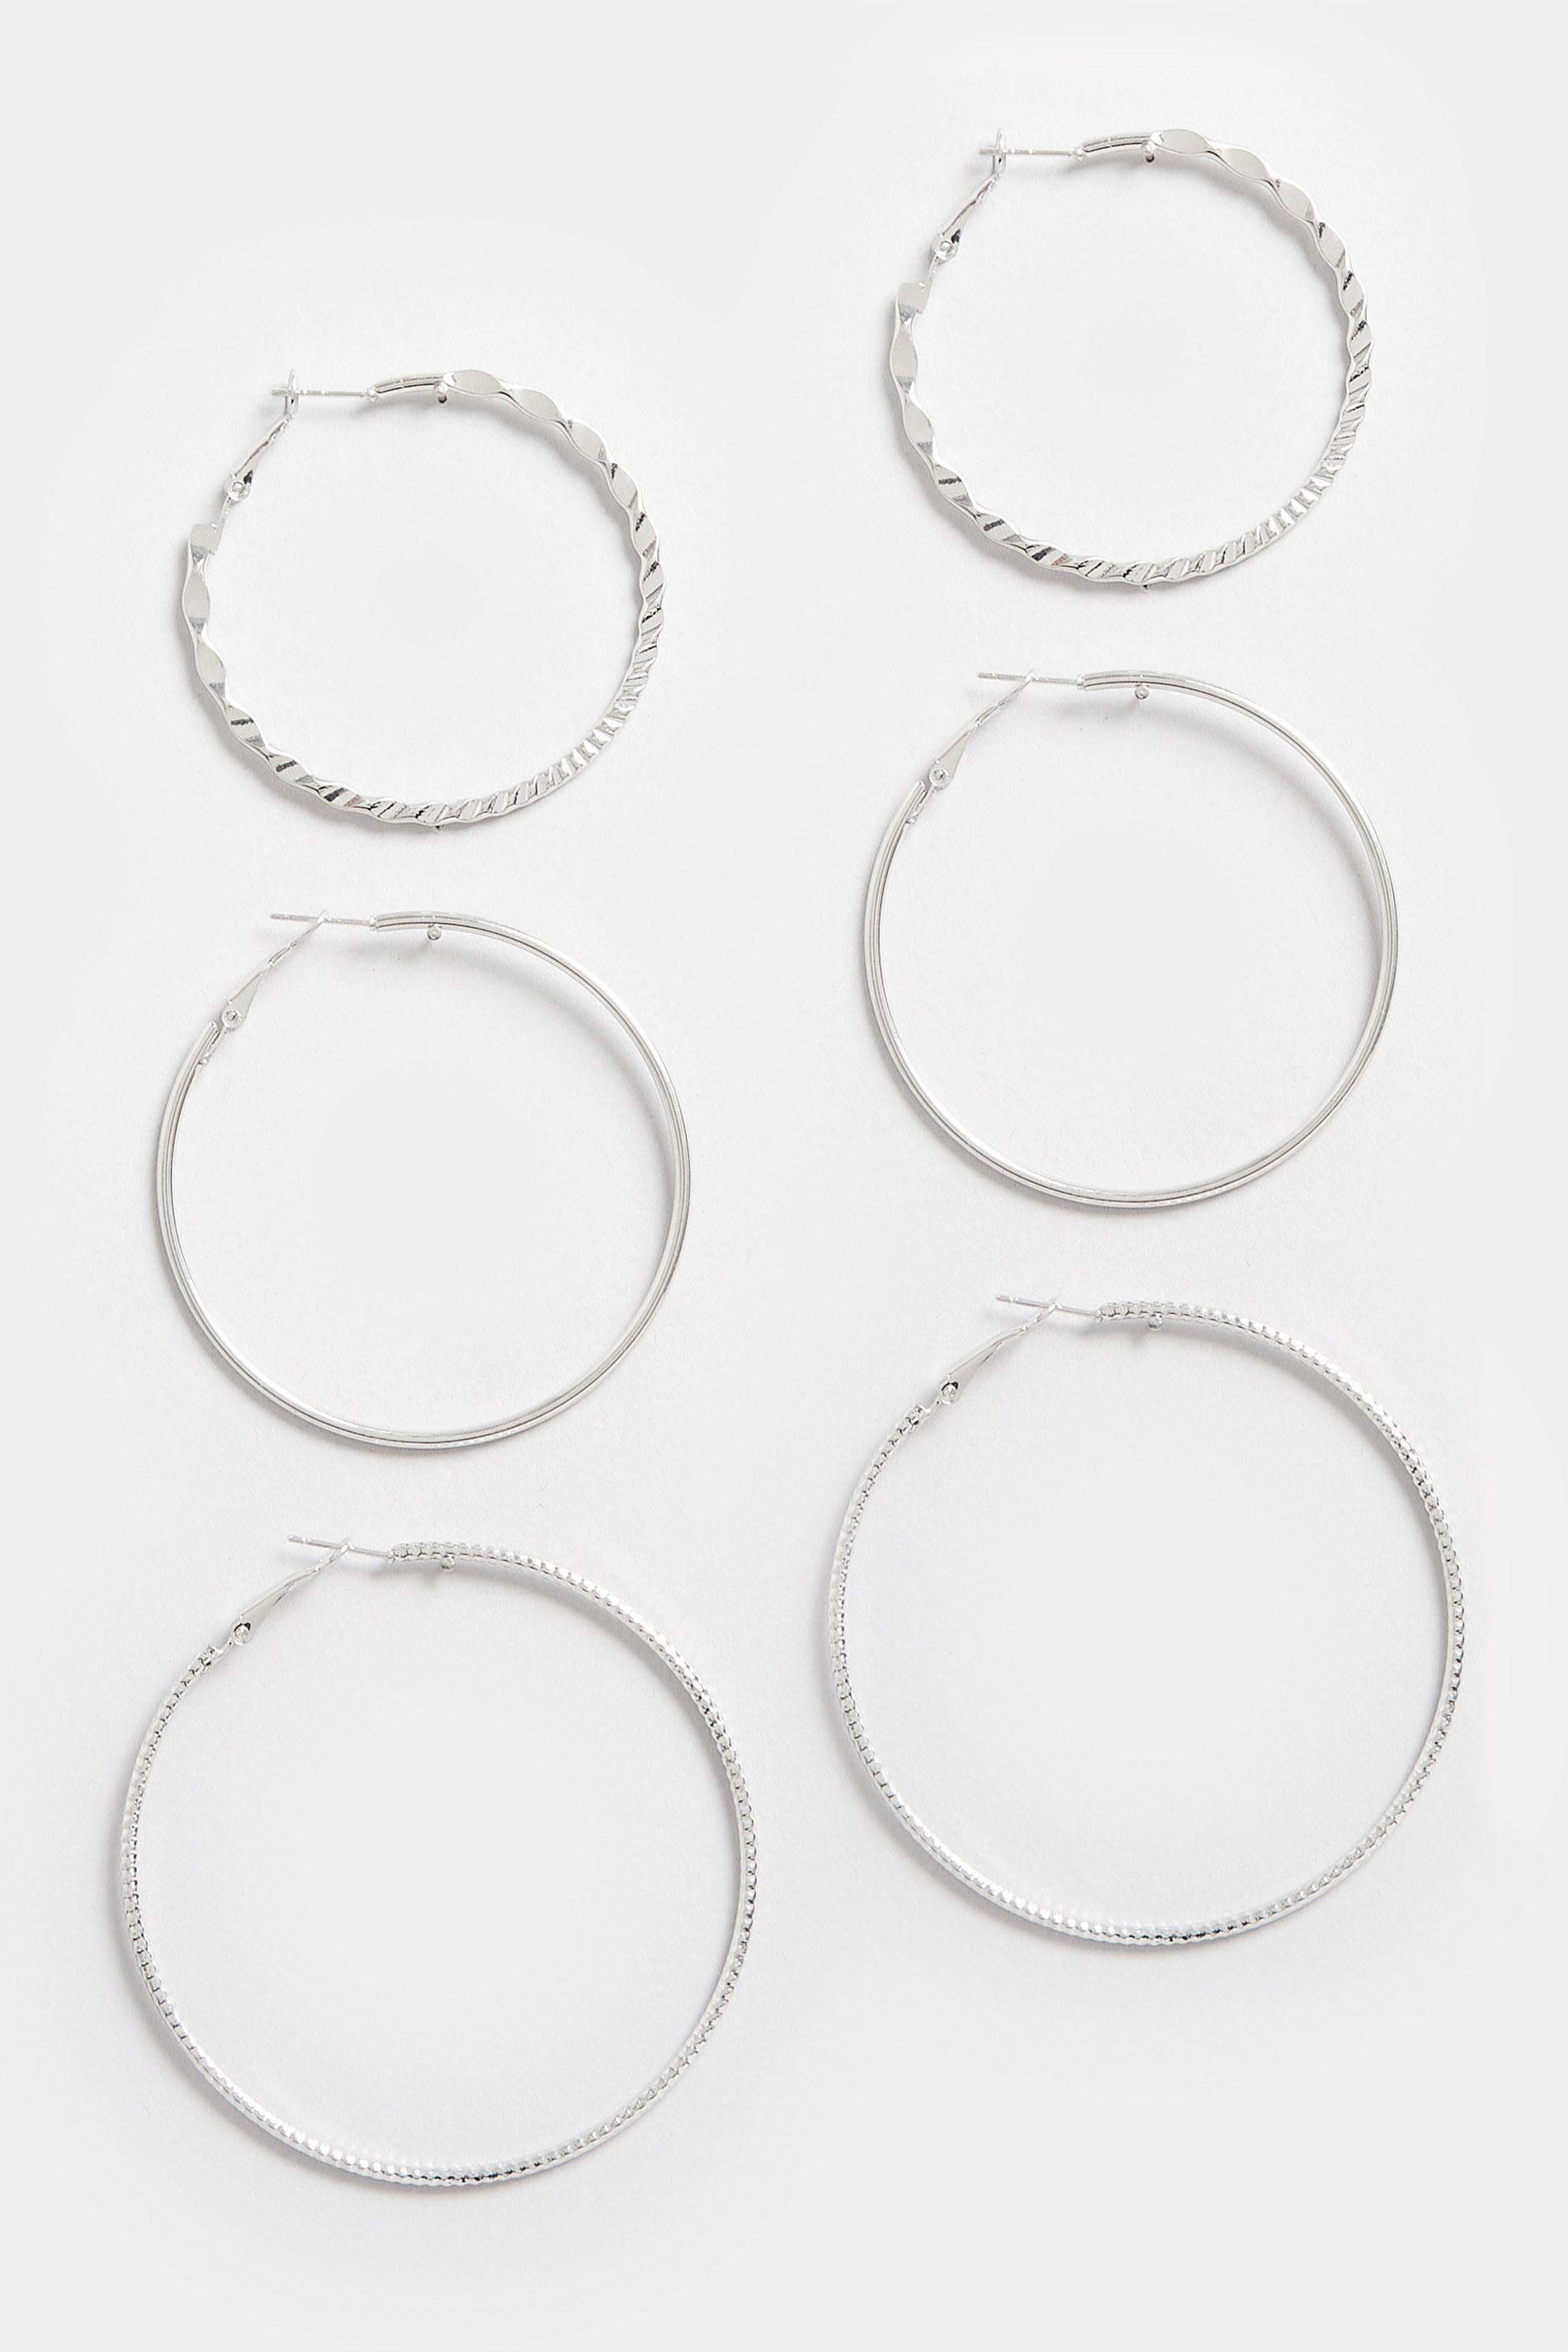 3 PACK Silver Large Hoop Earrings Set 2